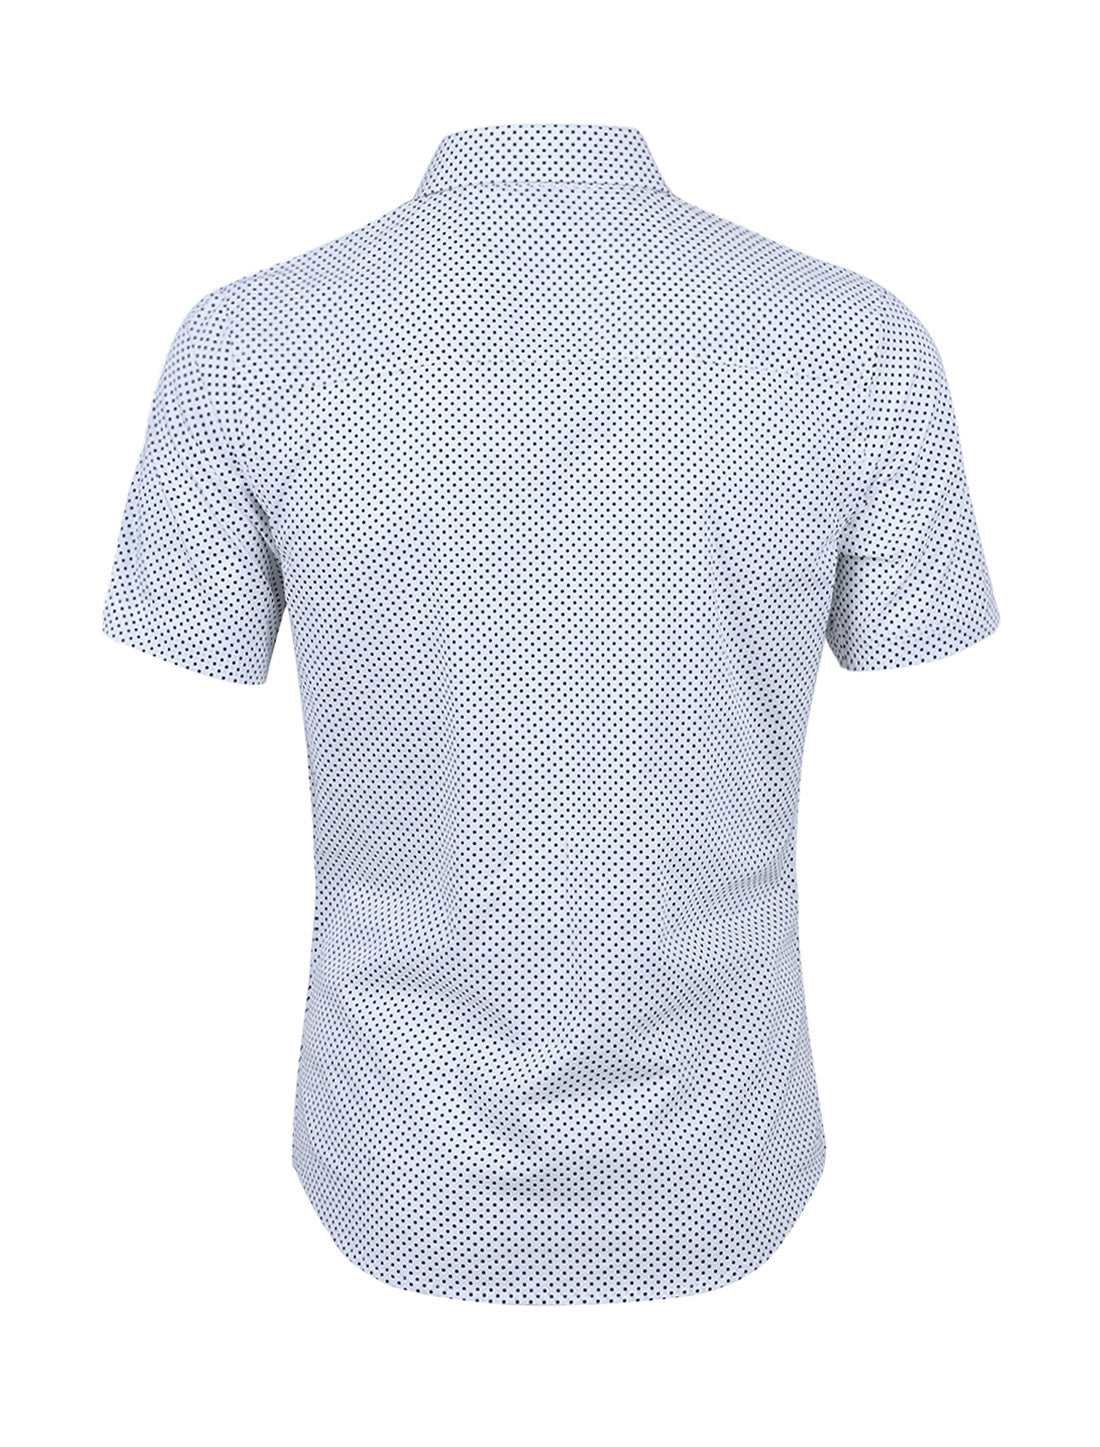 Bublédon Retro Short Sleeve Cotton Polka Dot Button Up Shirt